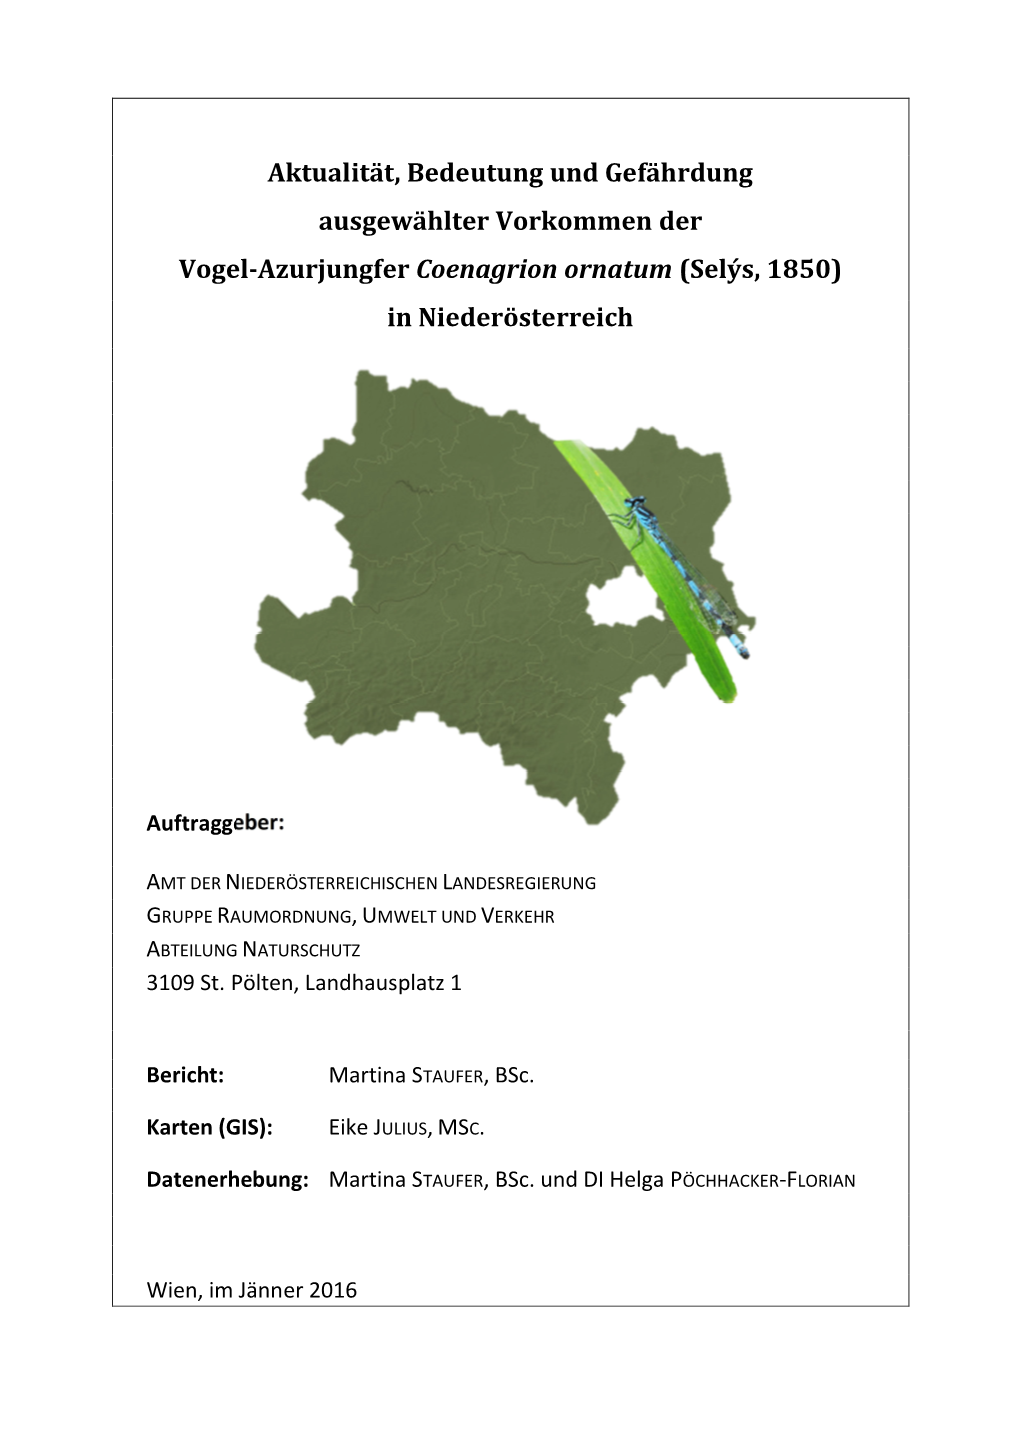 Aktualität, Bedeutung Und Gefährdung Ausgewählter Vorkommen Der Vogel-Azurjungfer Coenagrion Ornatum (Selýs, 1850) in Niederösterreich